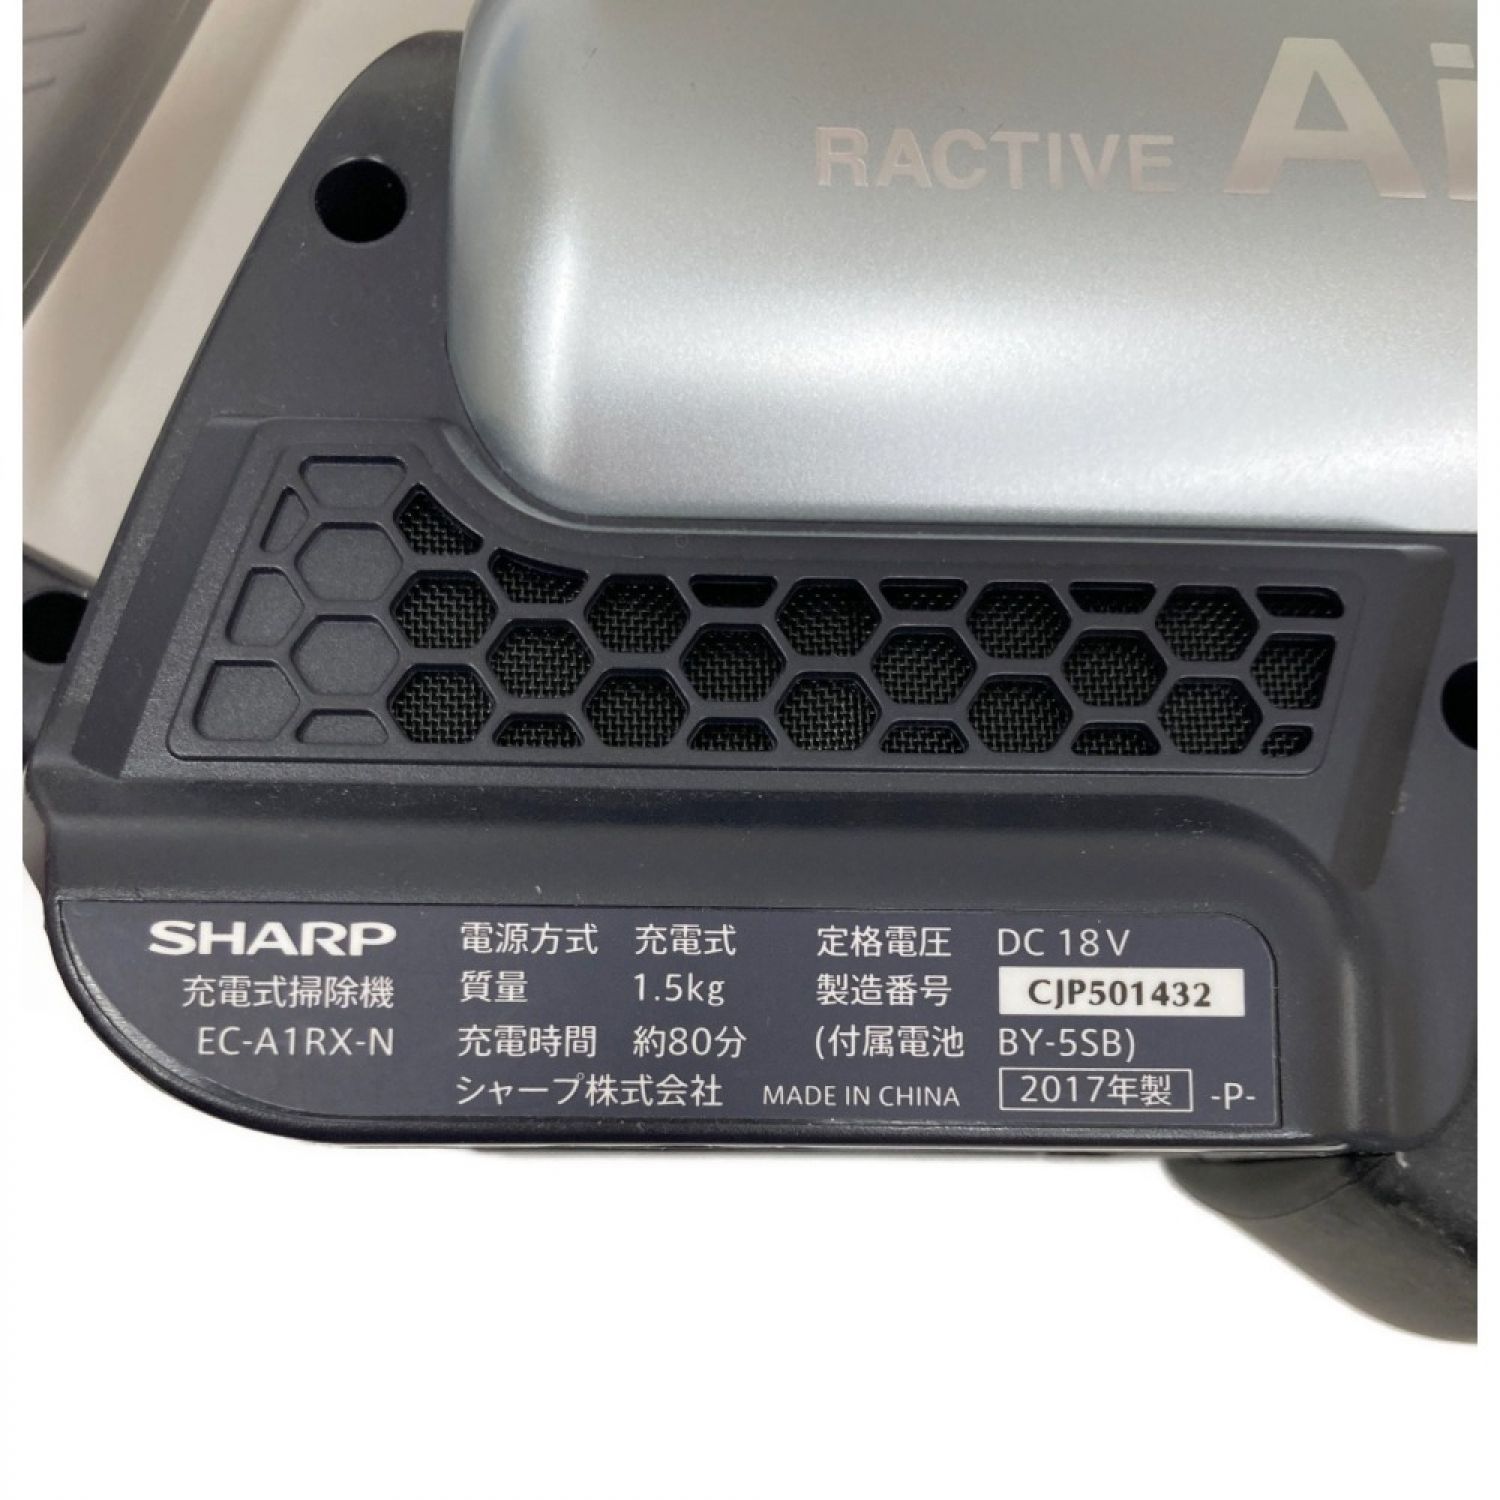 中古】 SHARP シャープ 充電式掃除機 ラクティブ エア スティック 